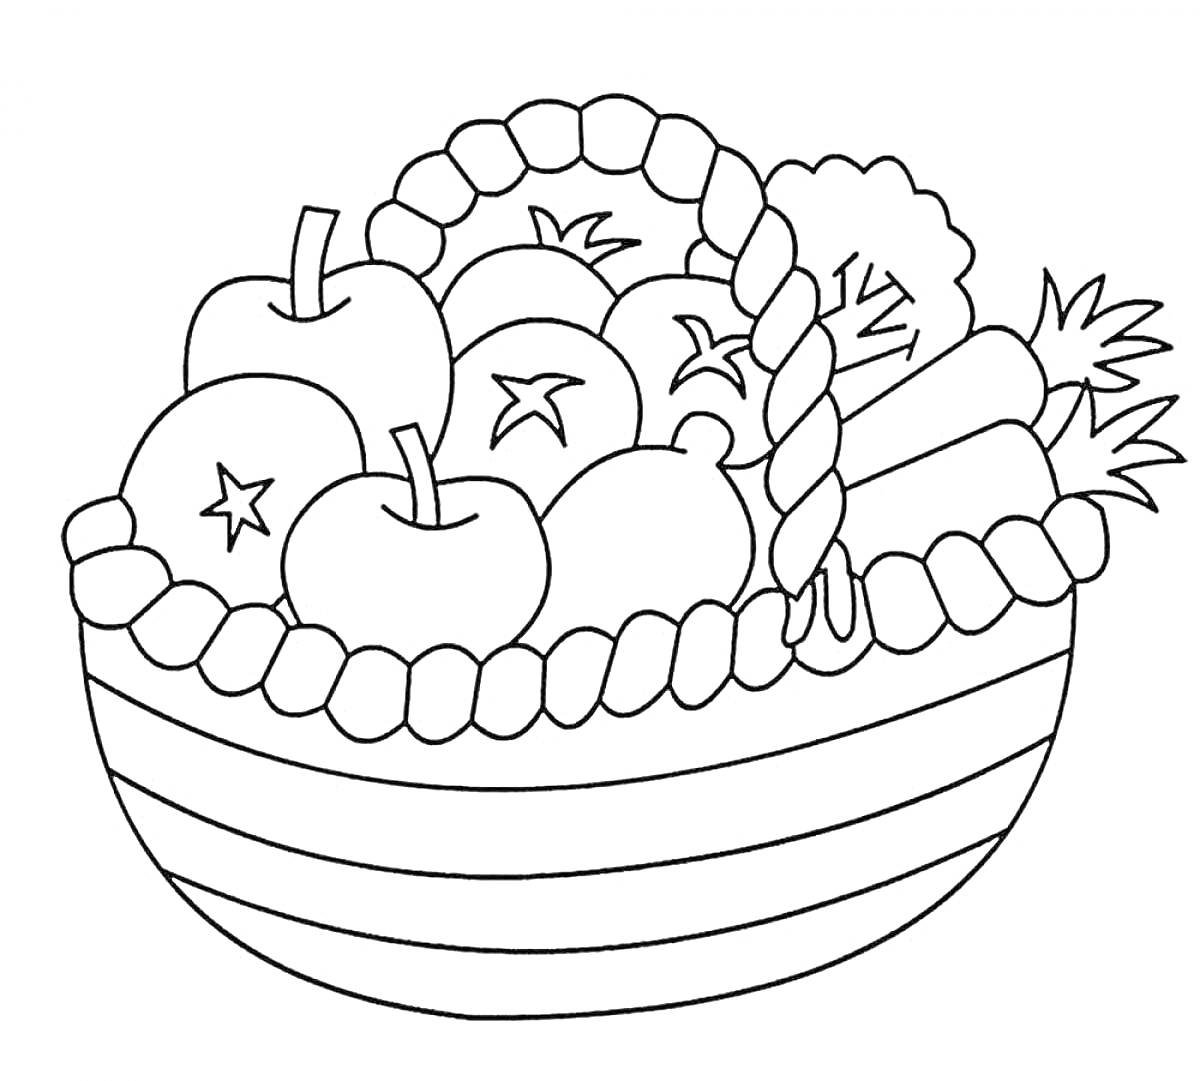 Раскраска Корзинка с фруктами и овощами (яблоки, виноград, морковь, брокколи)